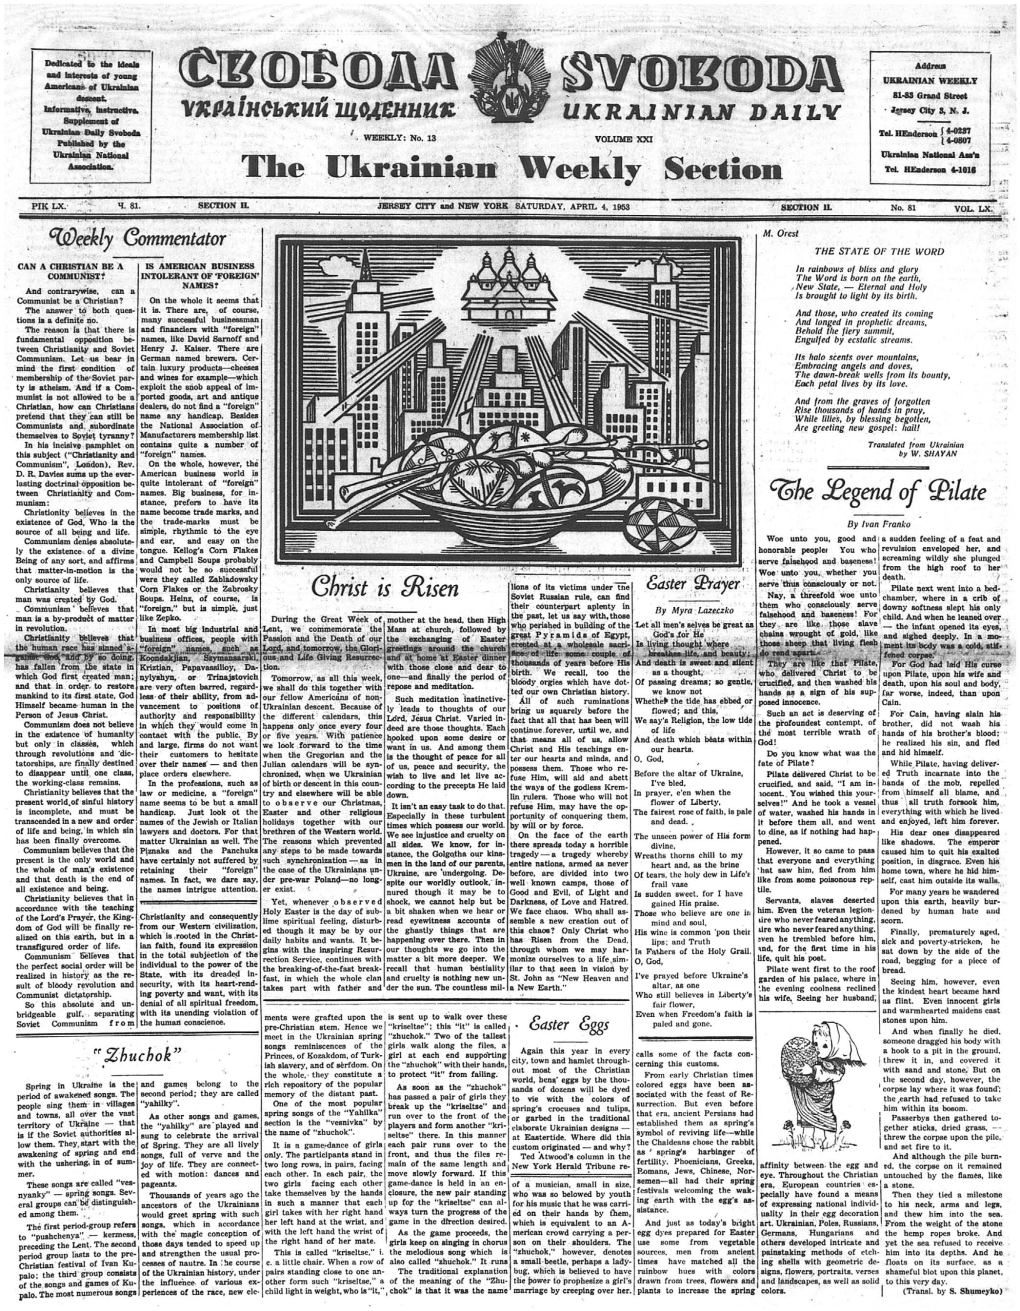 The Ukrainian Weekly 1953